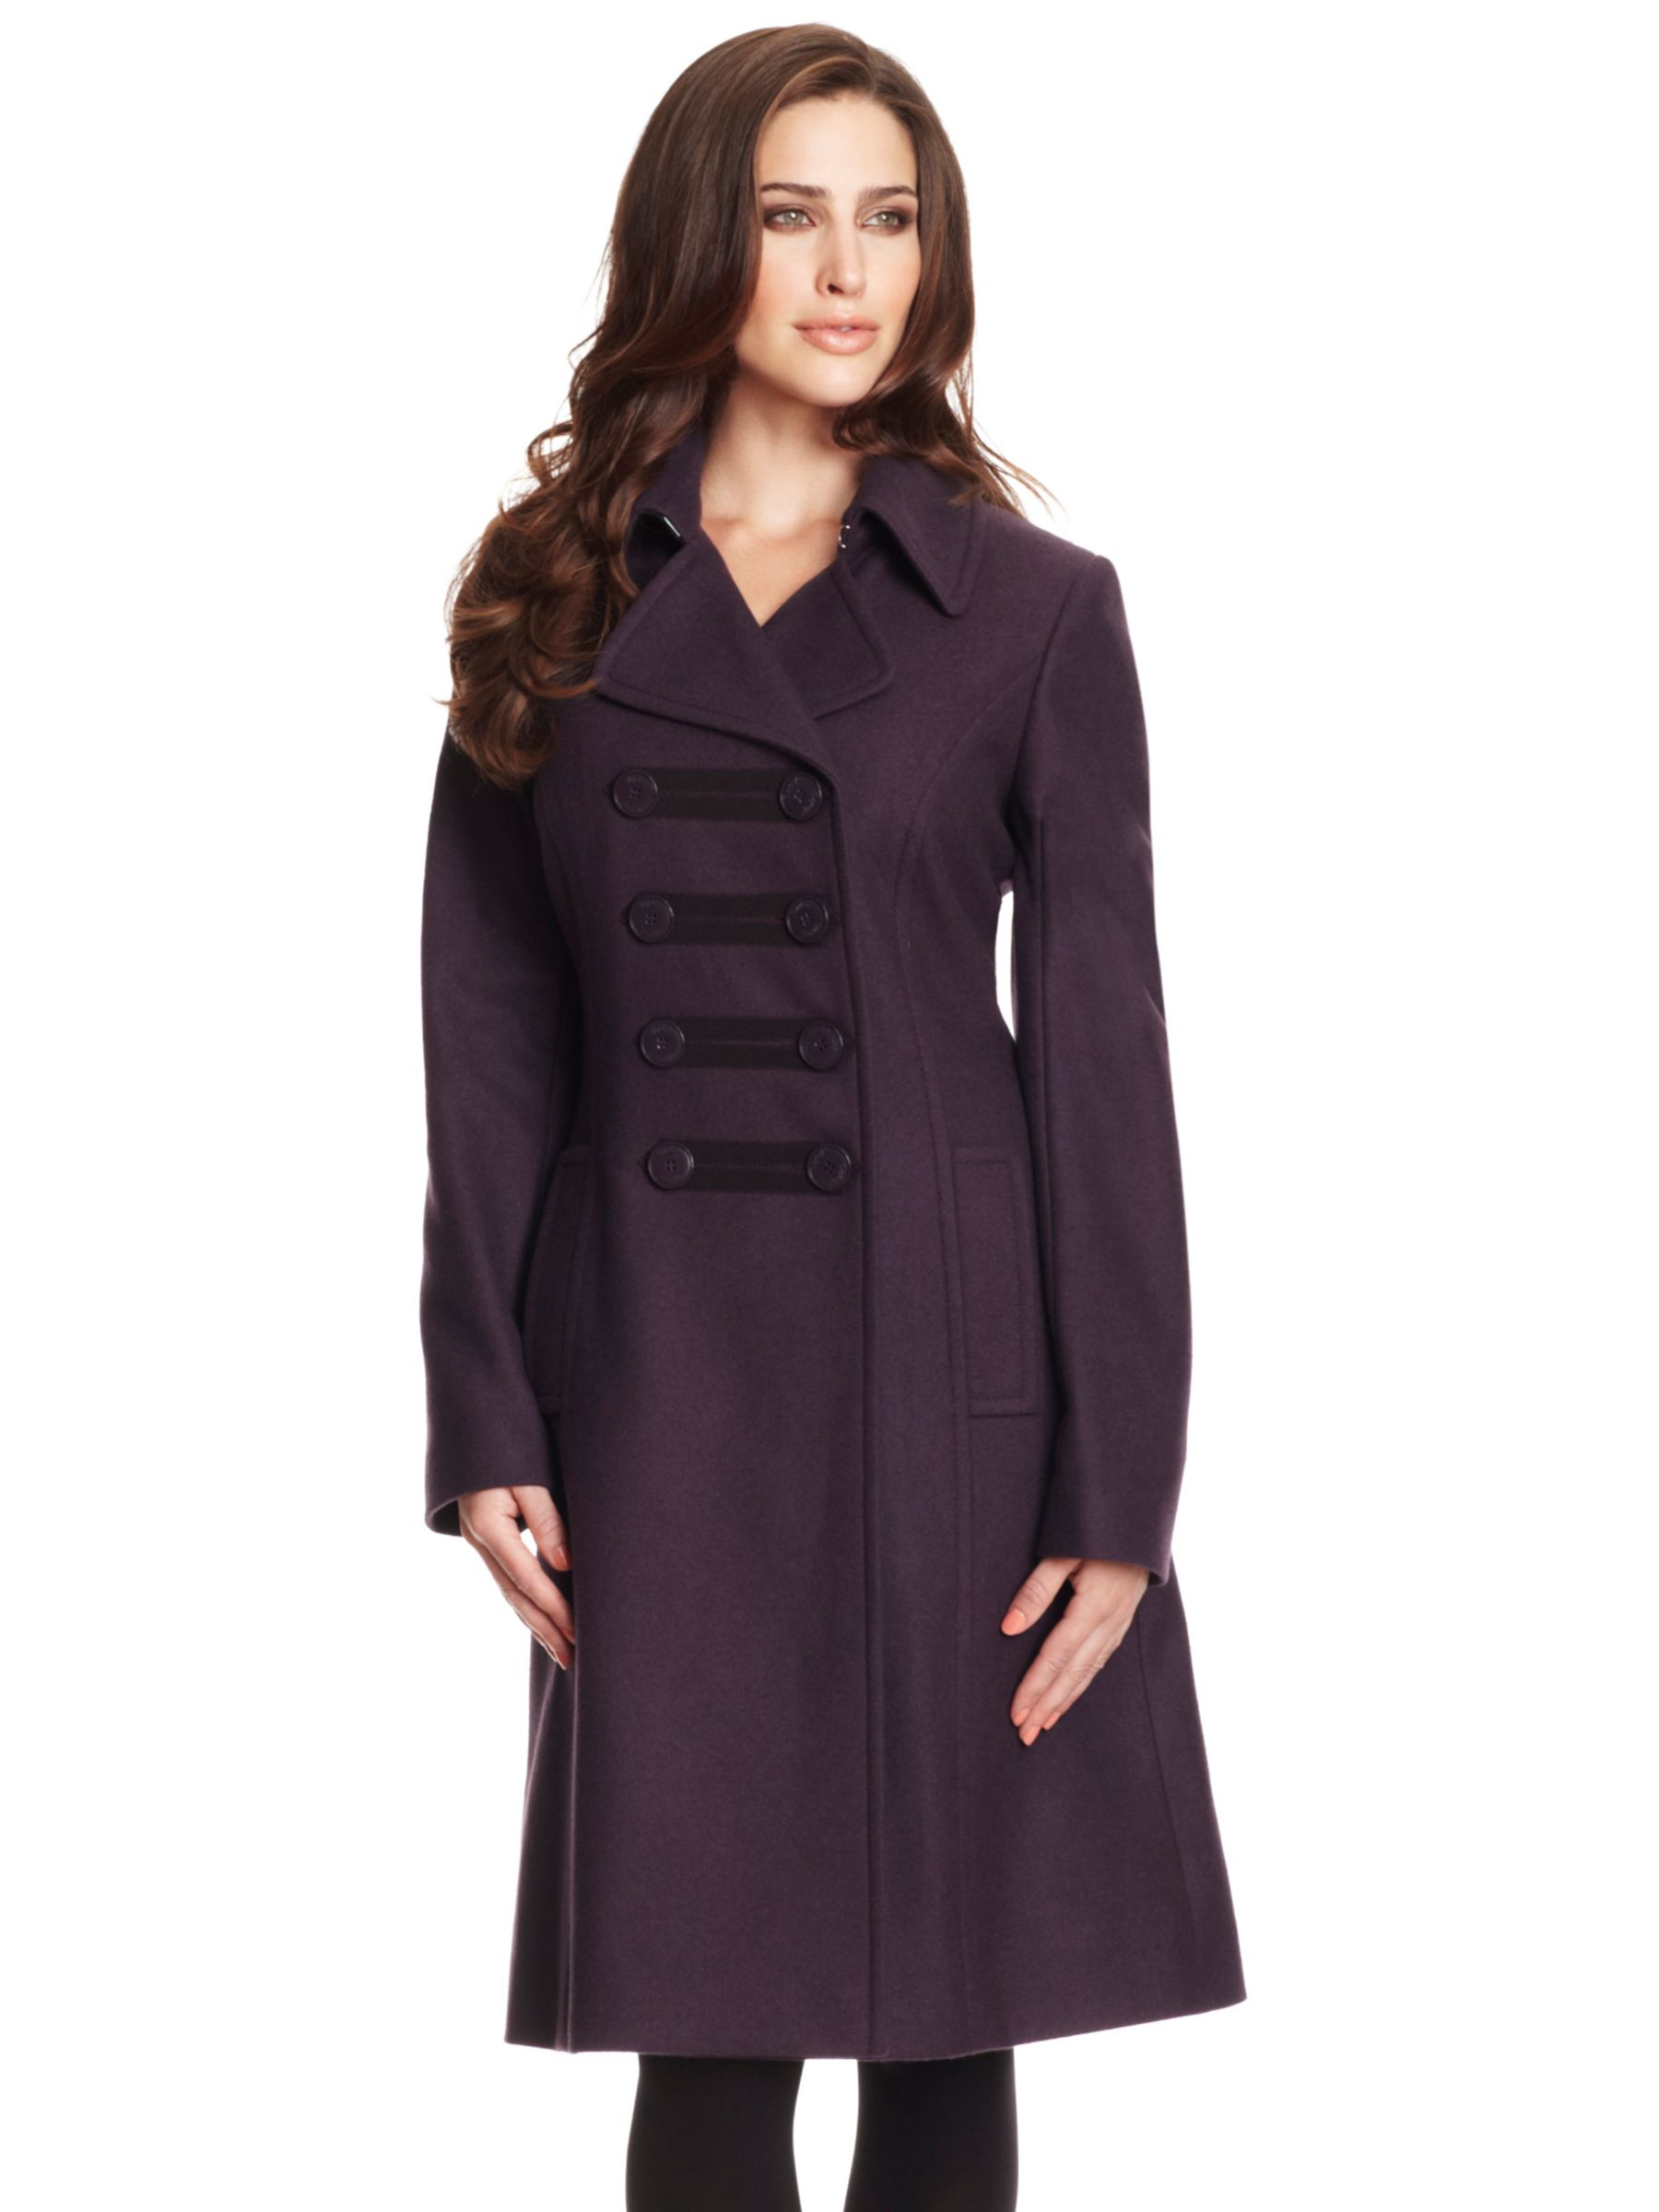 Damsel in a Dress Louisa- May Military Coat, Damson at JohnLewis